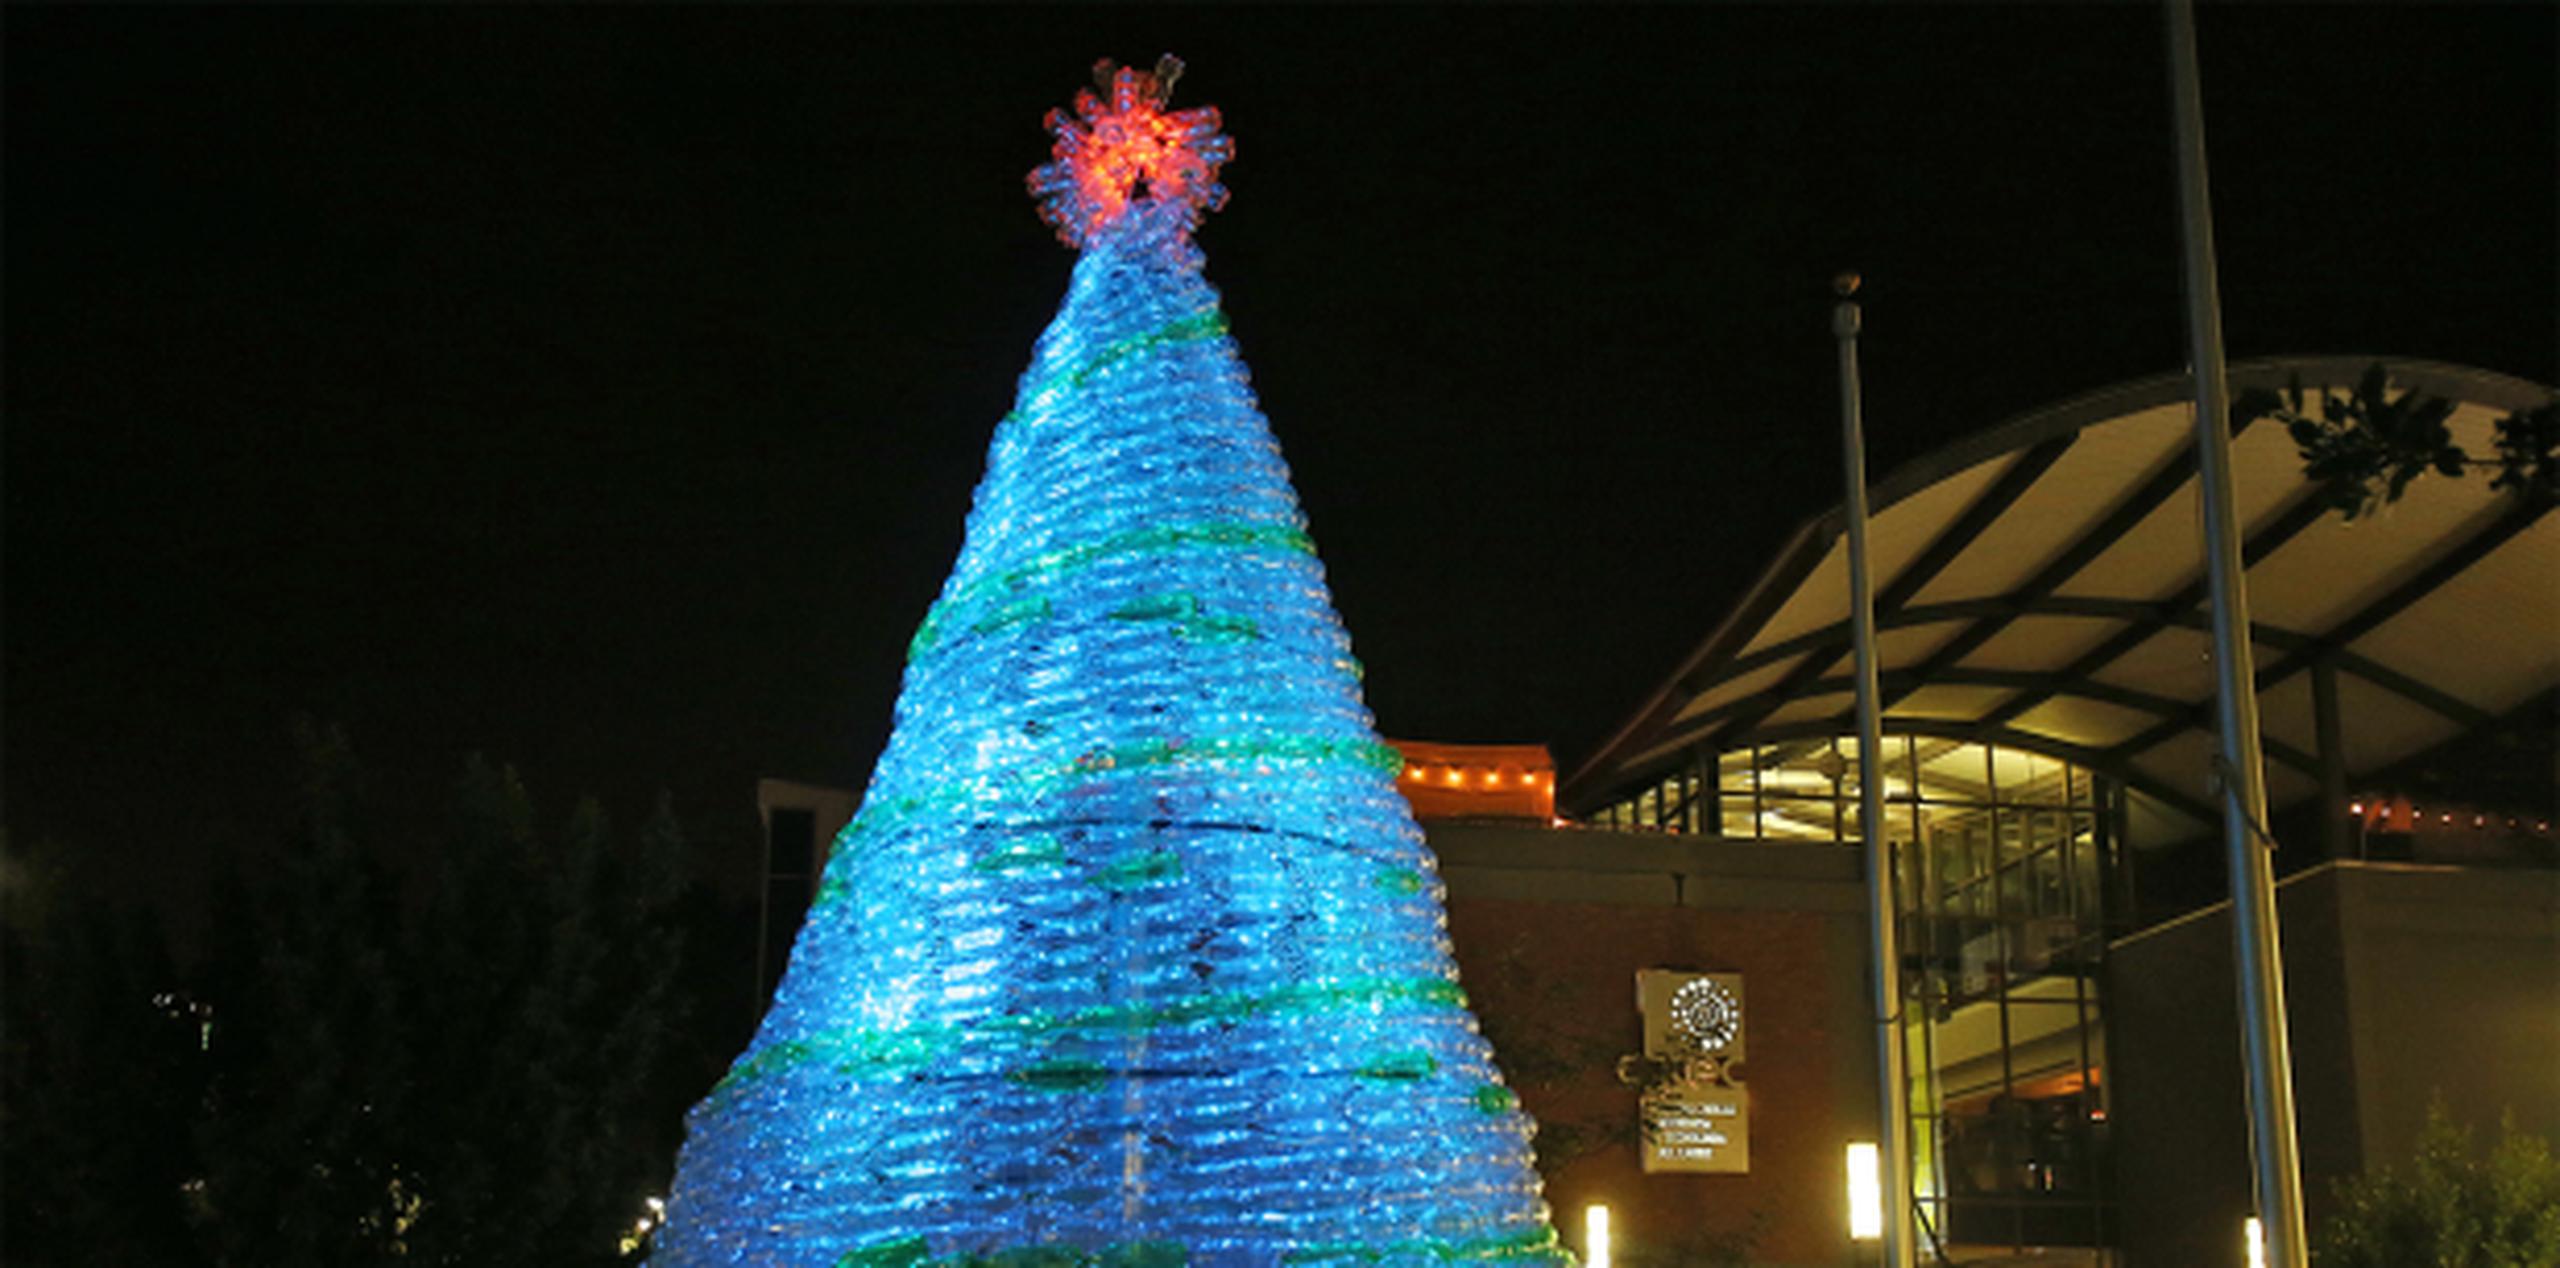 El árbol navideño que adornaba la plazoleta frente a la sede del Centro fue construido con botellas plásticas de refresco. (jose.candelaria@gfrmedia.com)